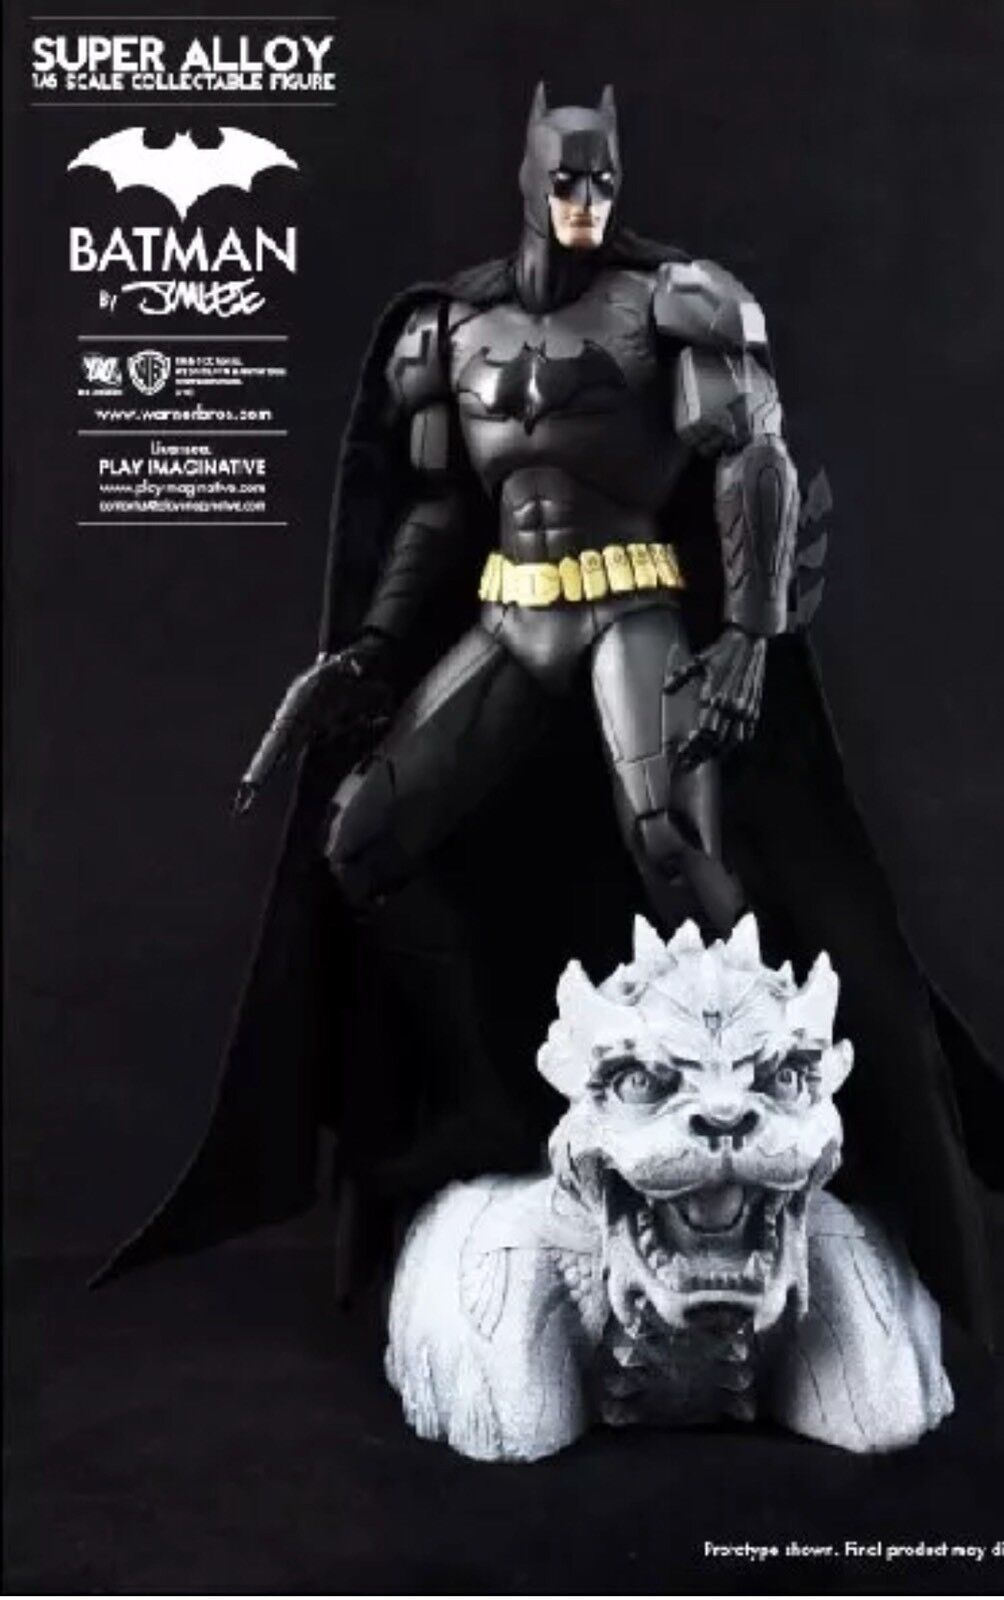 Play Imaginative DC Comics Batman Super Alloy 1:6 Scale Figure - Jim Lee